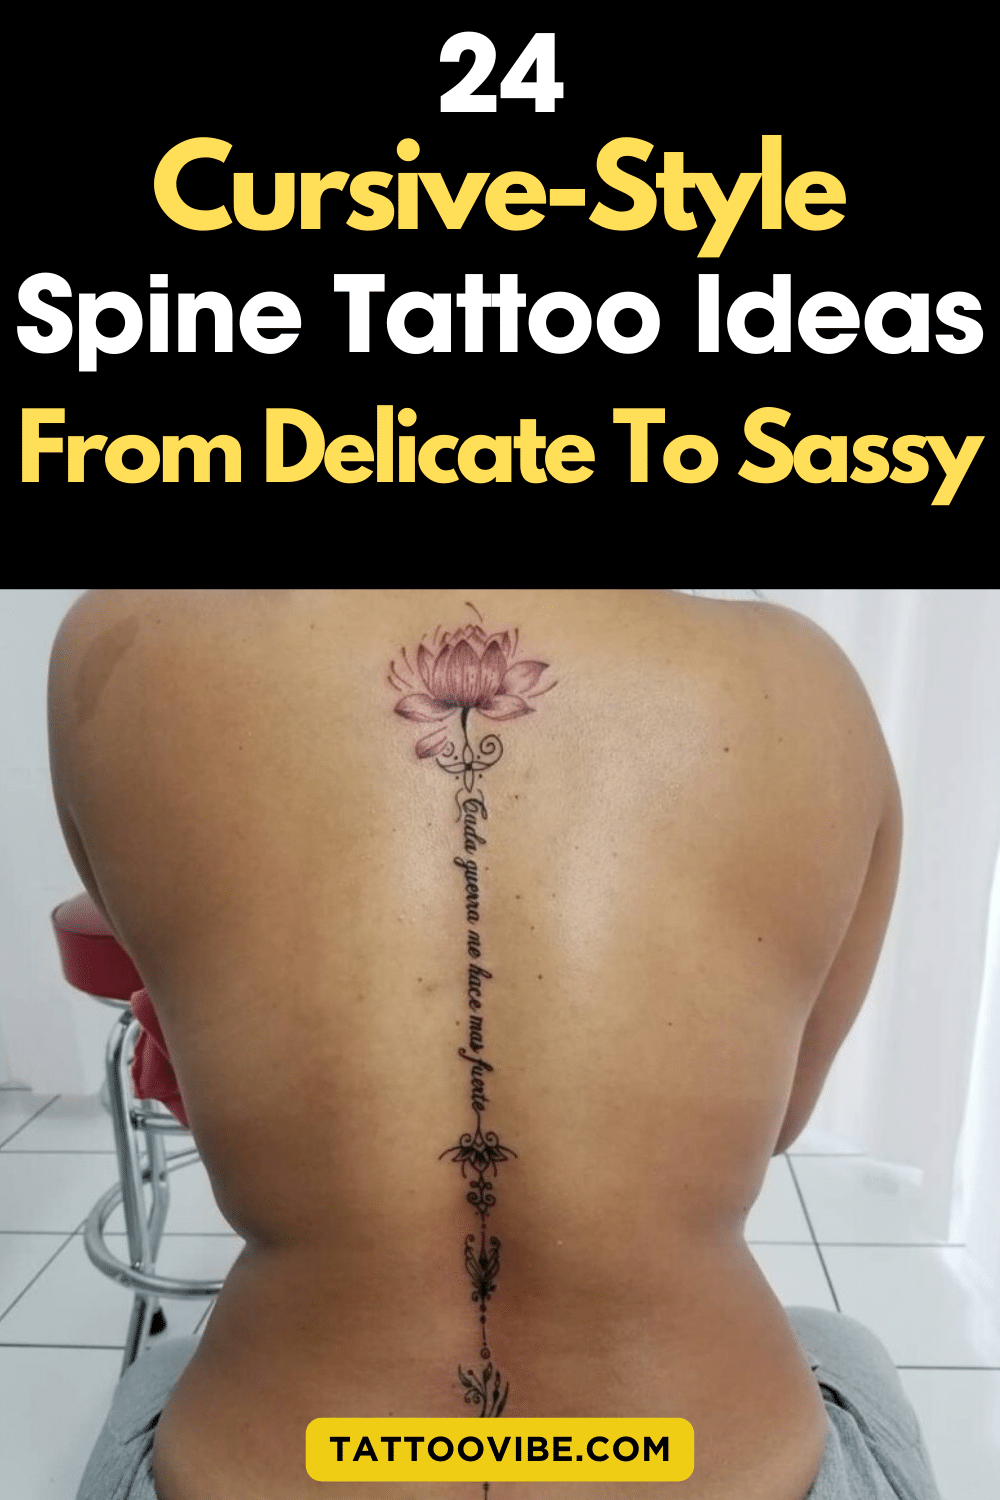 24 idées de tatouages cursifs sur la colonne vertébrale, de la plus délicate à la plus insolente (1)